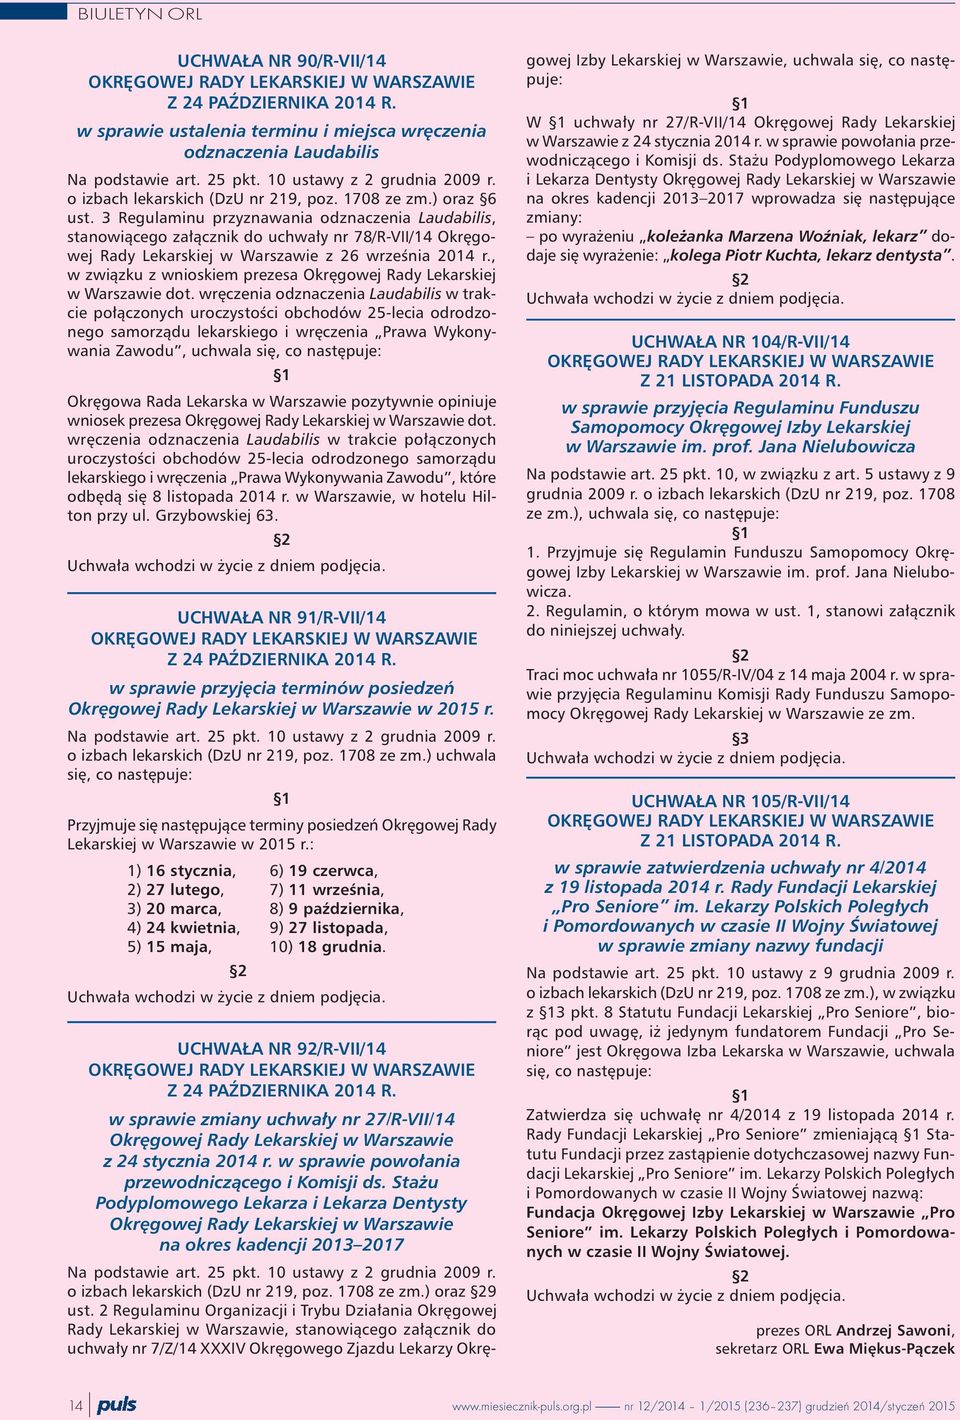 3 Regulaminu przyznawania odznaczenia Laudabilis, stanowi¹cego za³¹cznik do uchwa³y nr 78/R-VII/14 Okrêgowej Rady Lekarskiej w Warszawie z 26 wrzeœnia 2014 r.